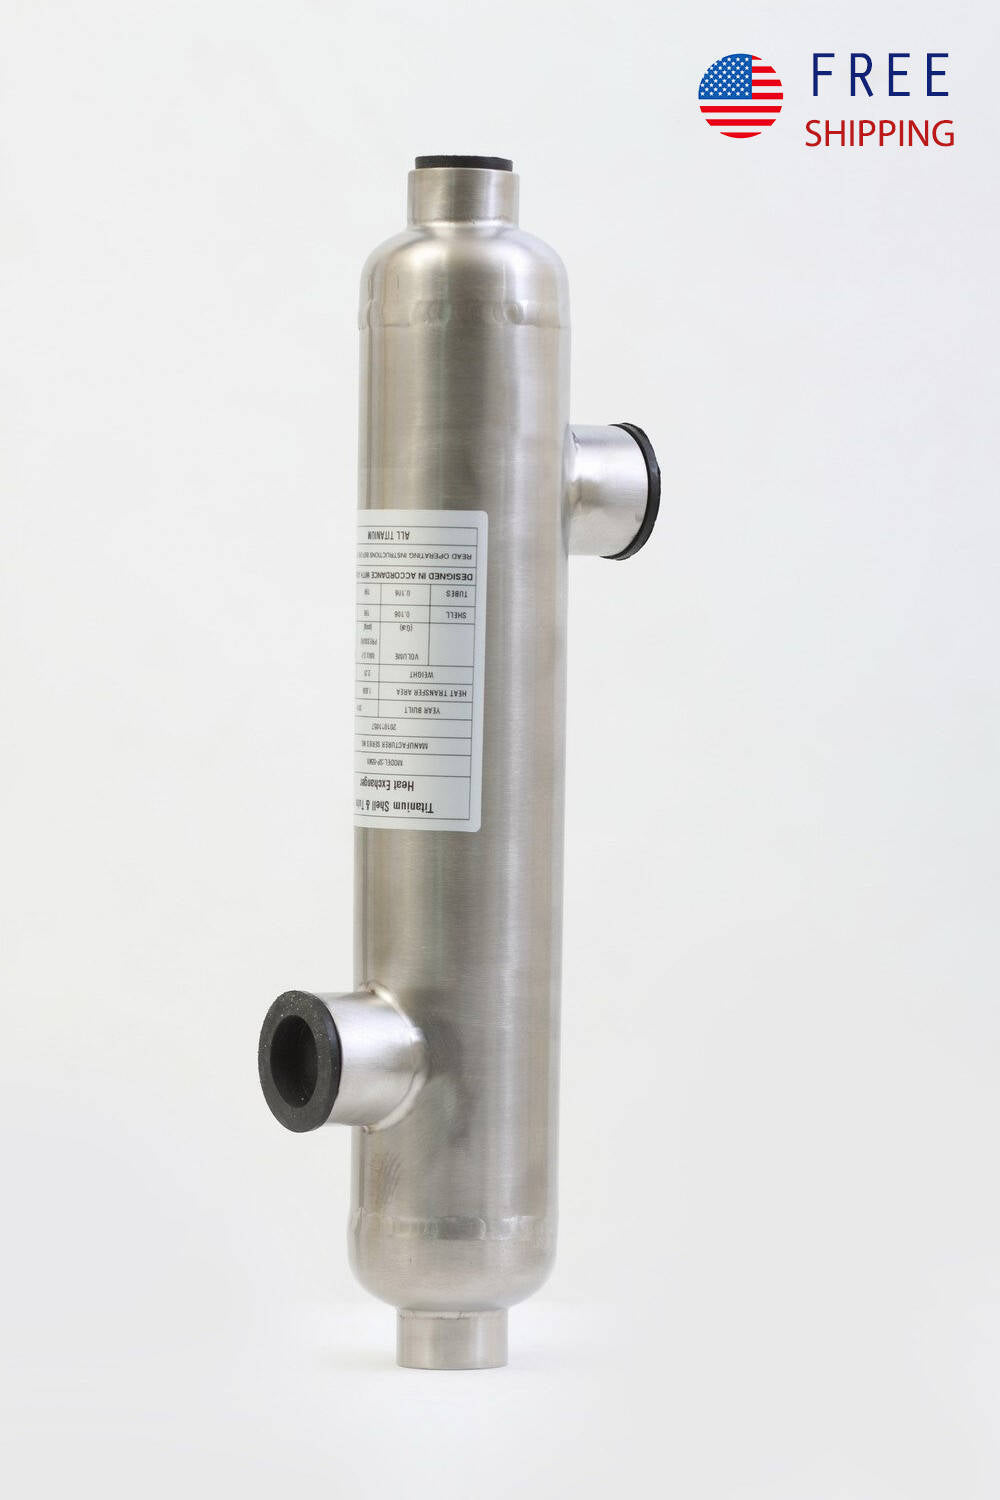 Titanium Heat Exchanger - 55K for Salt Pool Heating Opposite Side 1 1/2